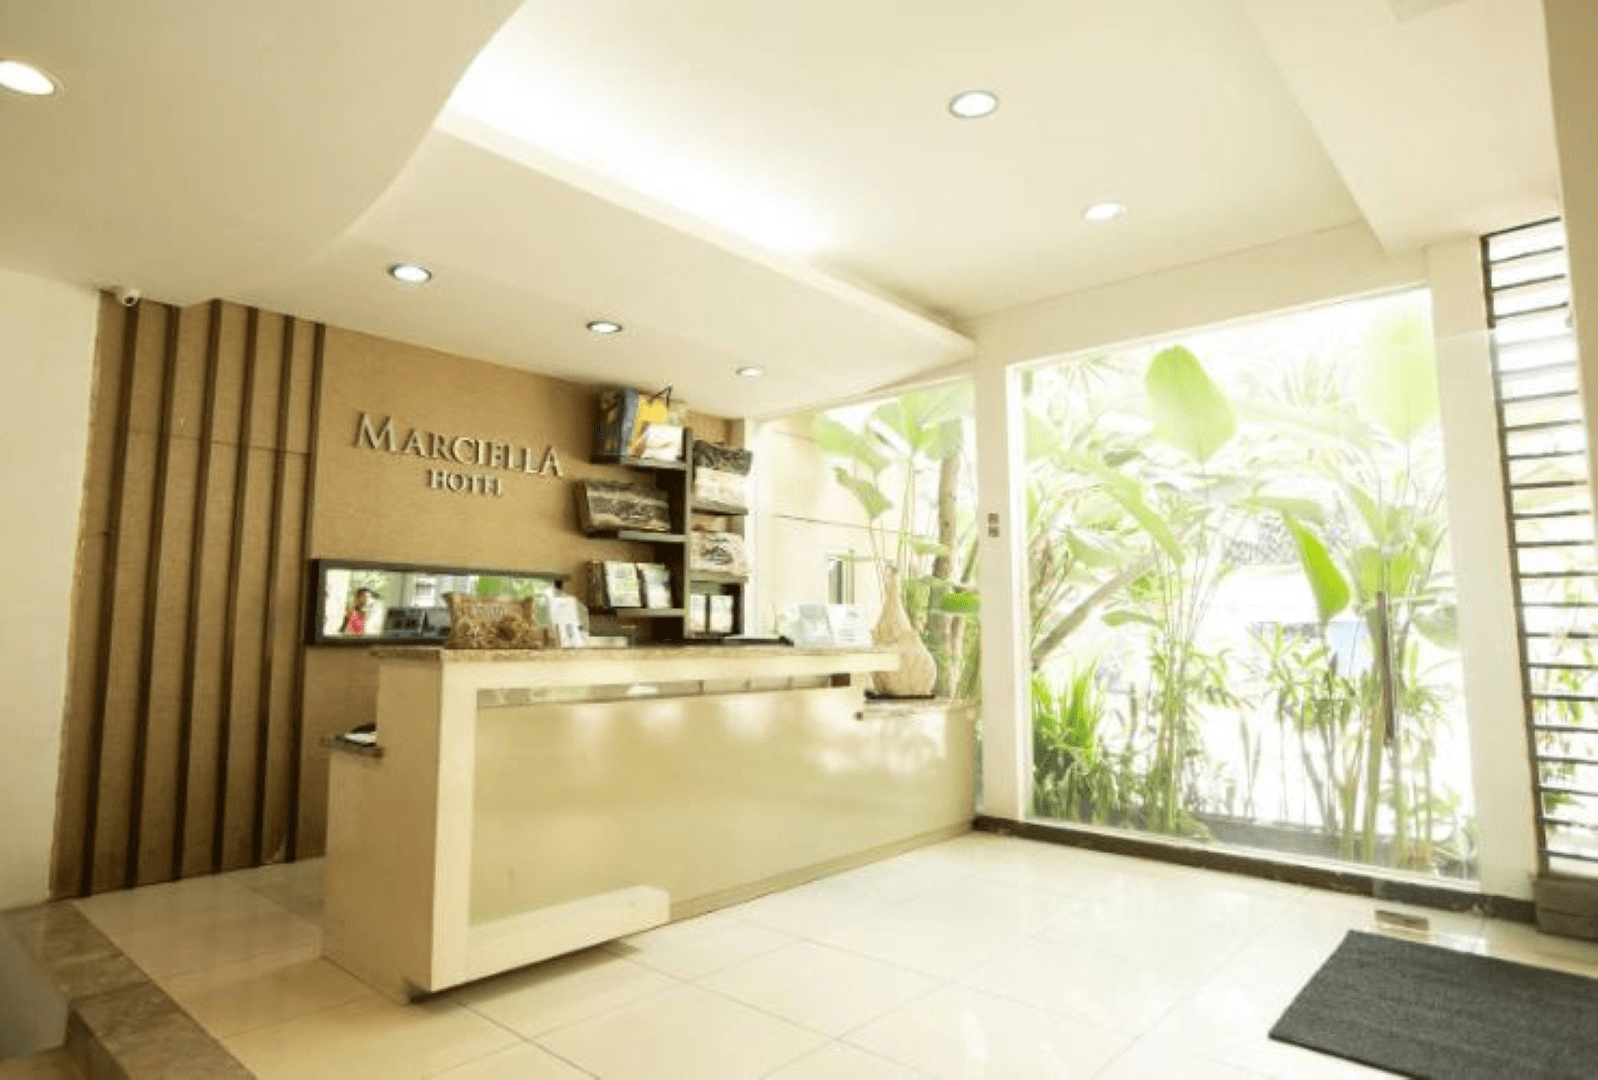 Exterior & Views 2, Marciella hotel, Bandung